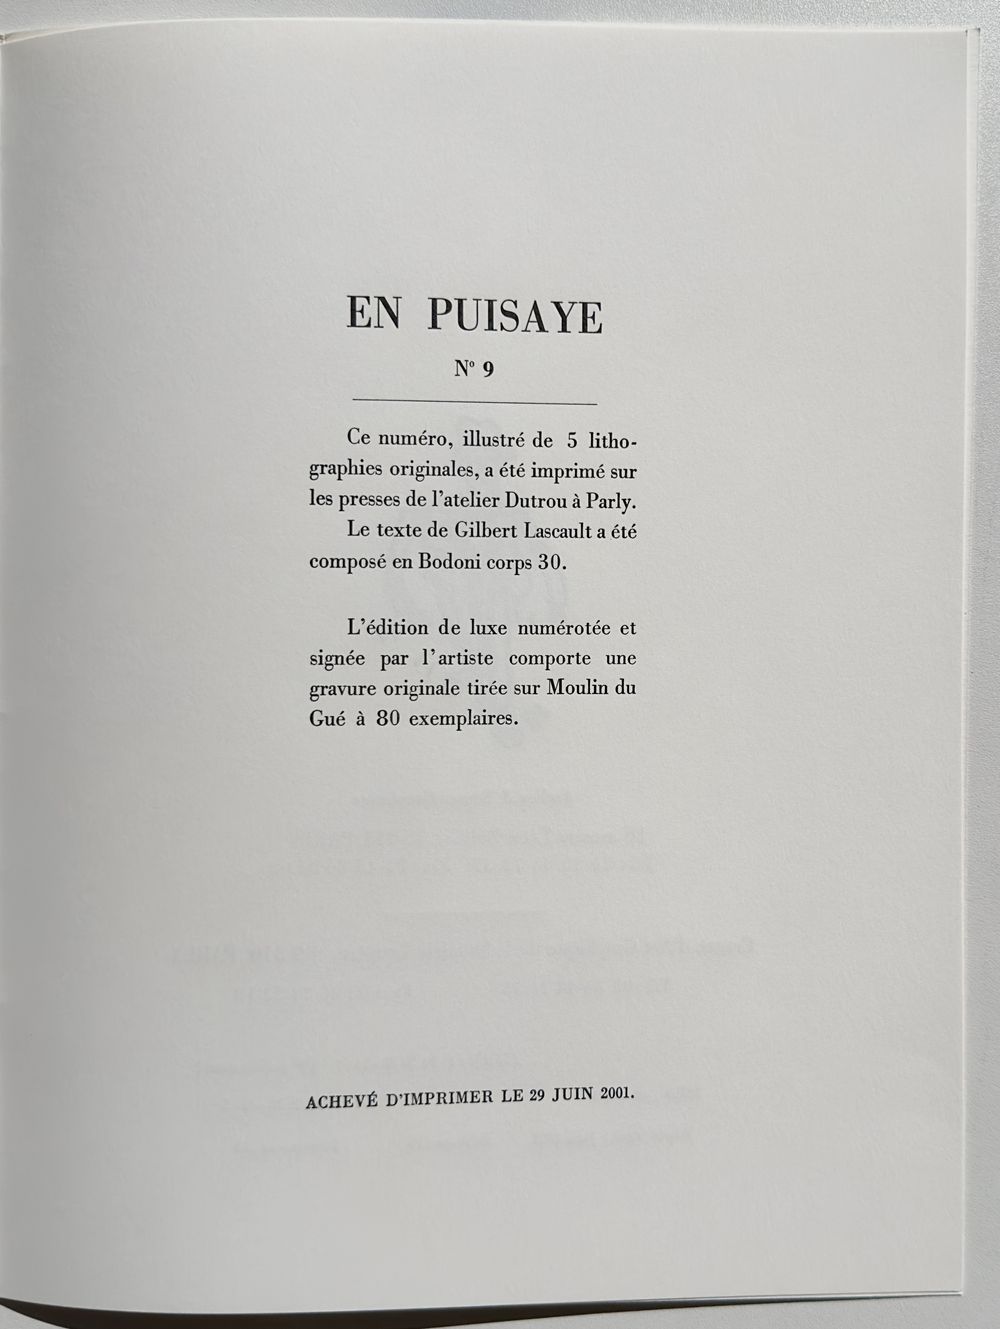 La Cité chimérique  (5 lithographies) - Texte Gilbert Lascault